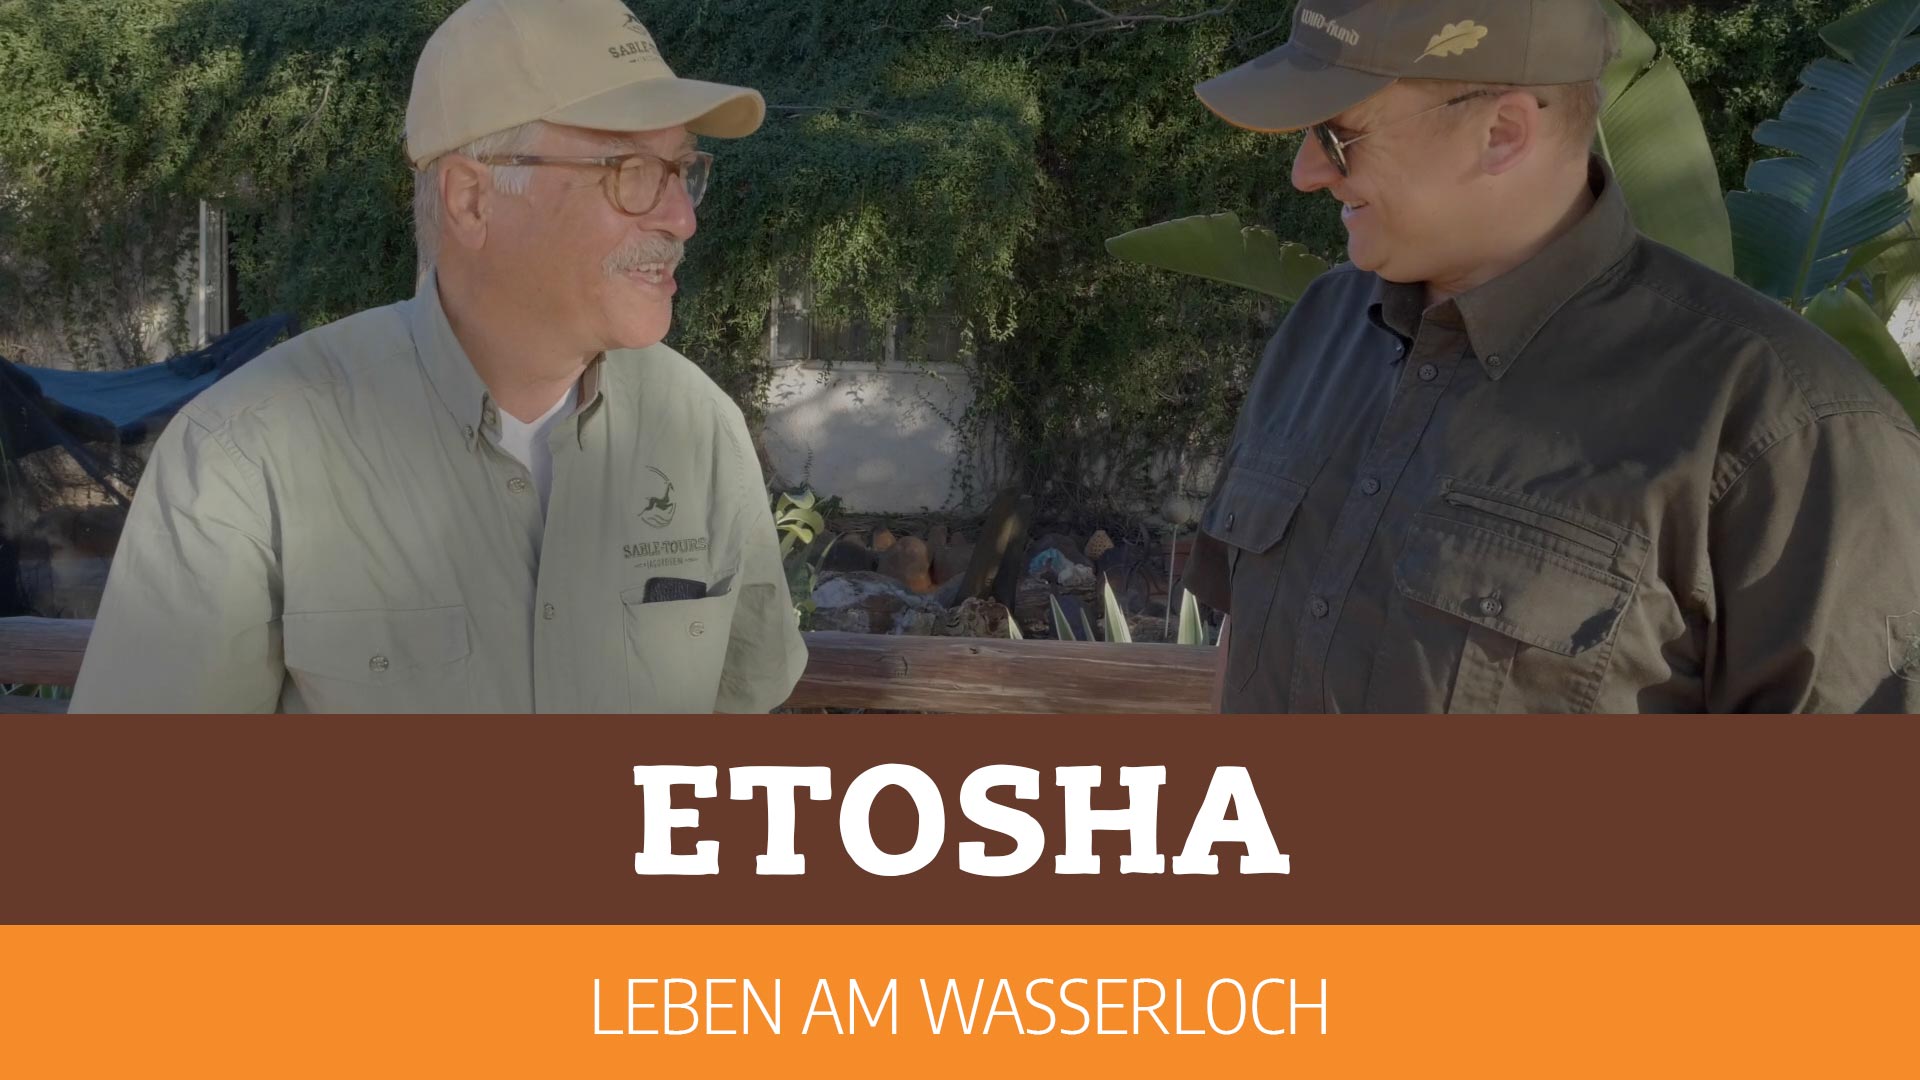 Etosha - Leben am Wasserloch